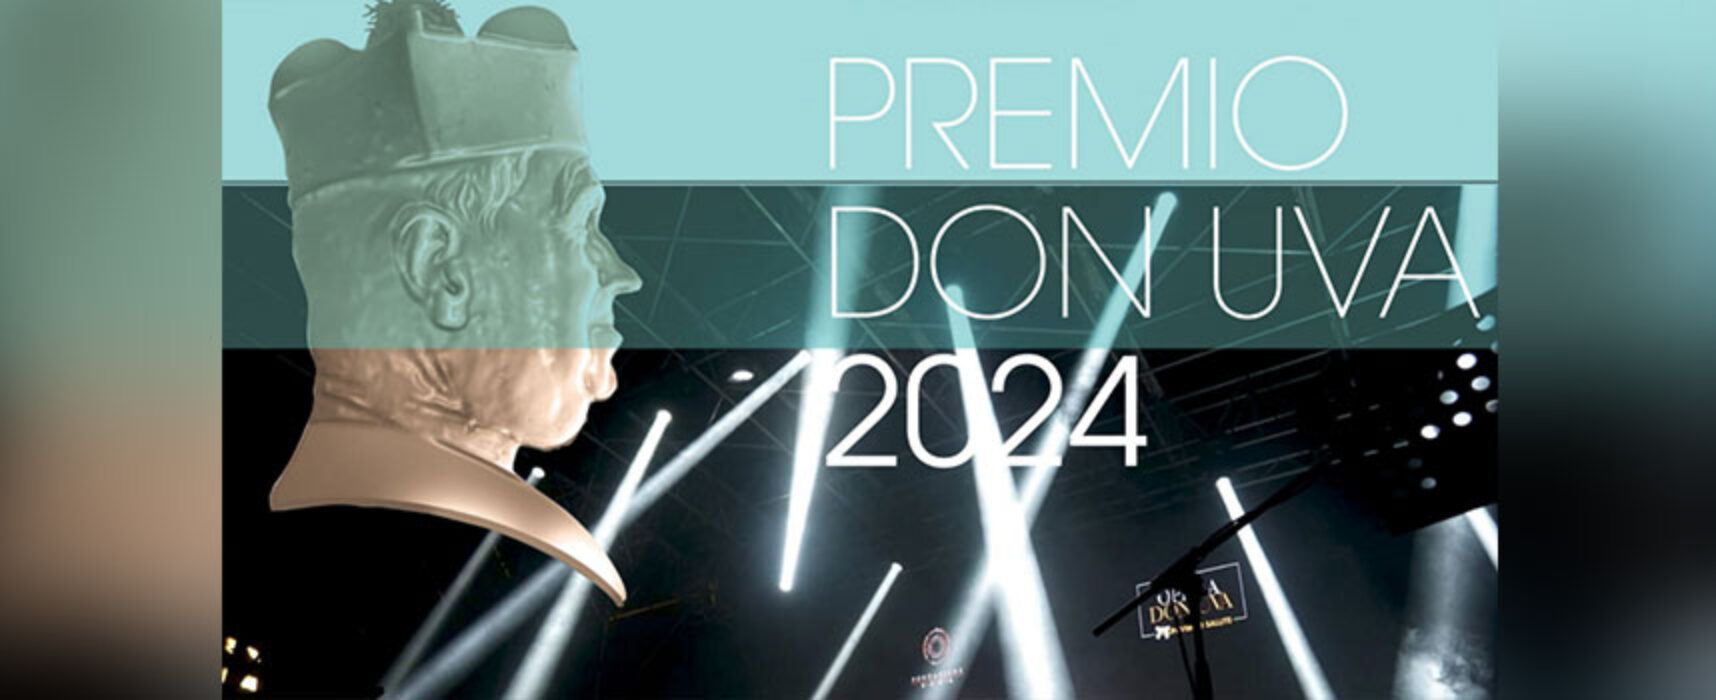 Al via BIT di Milano, prevista la presentazione del Premio Nazionale Don Uva / PROGRAMMA